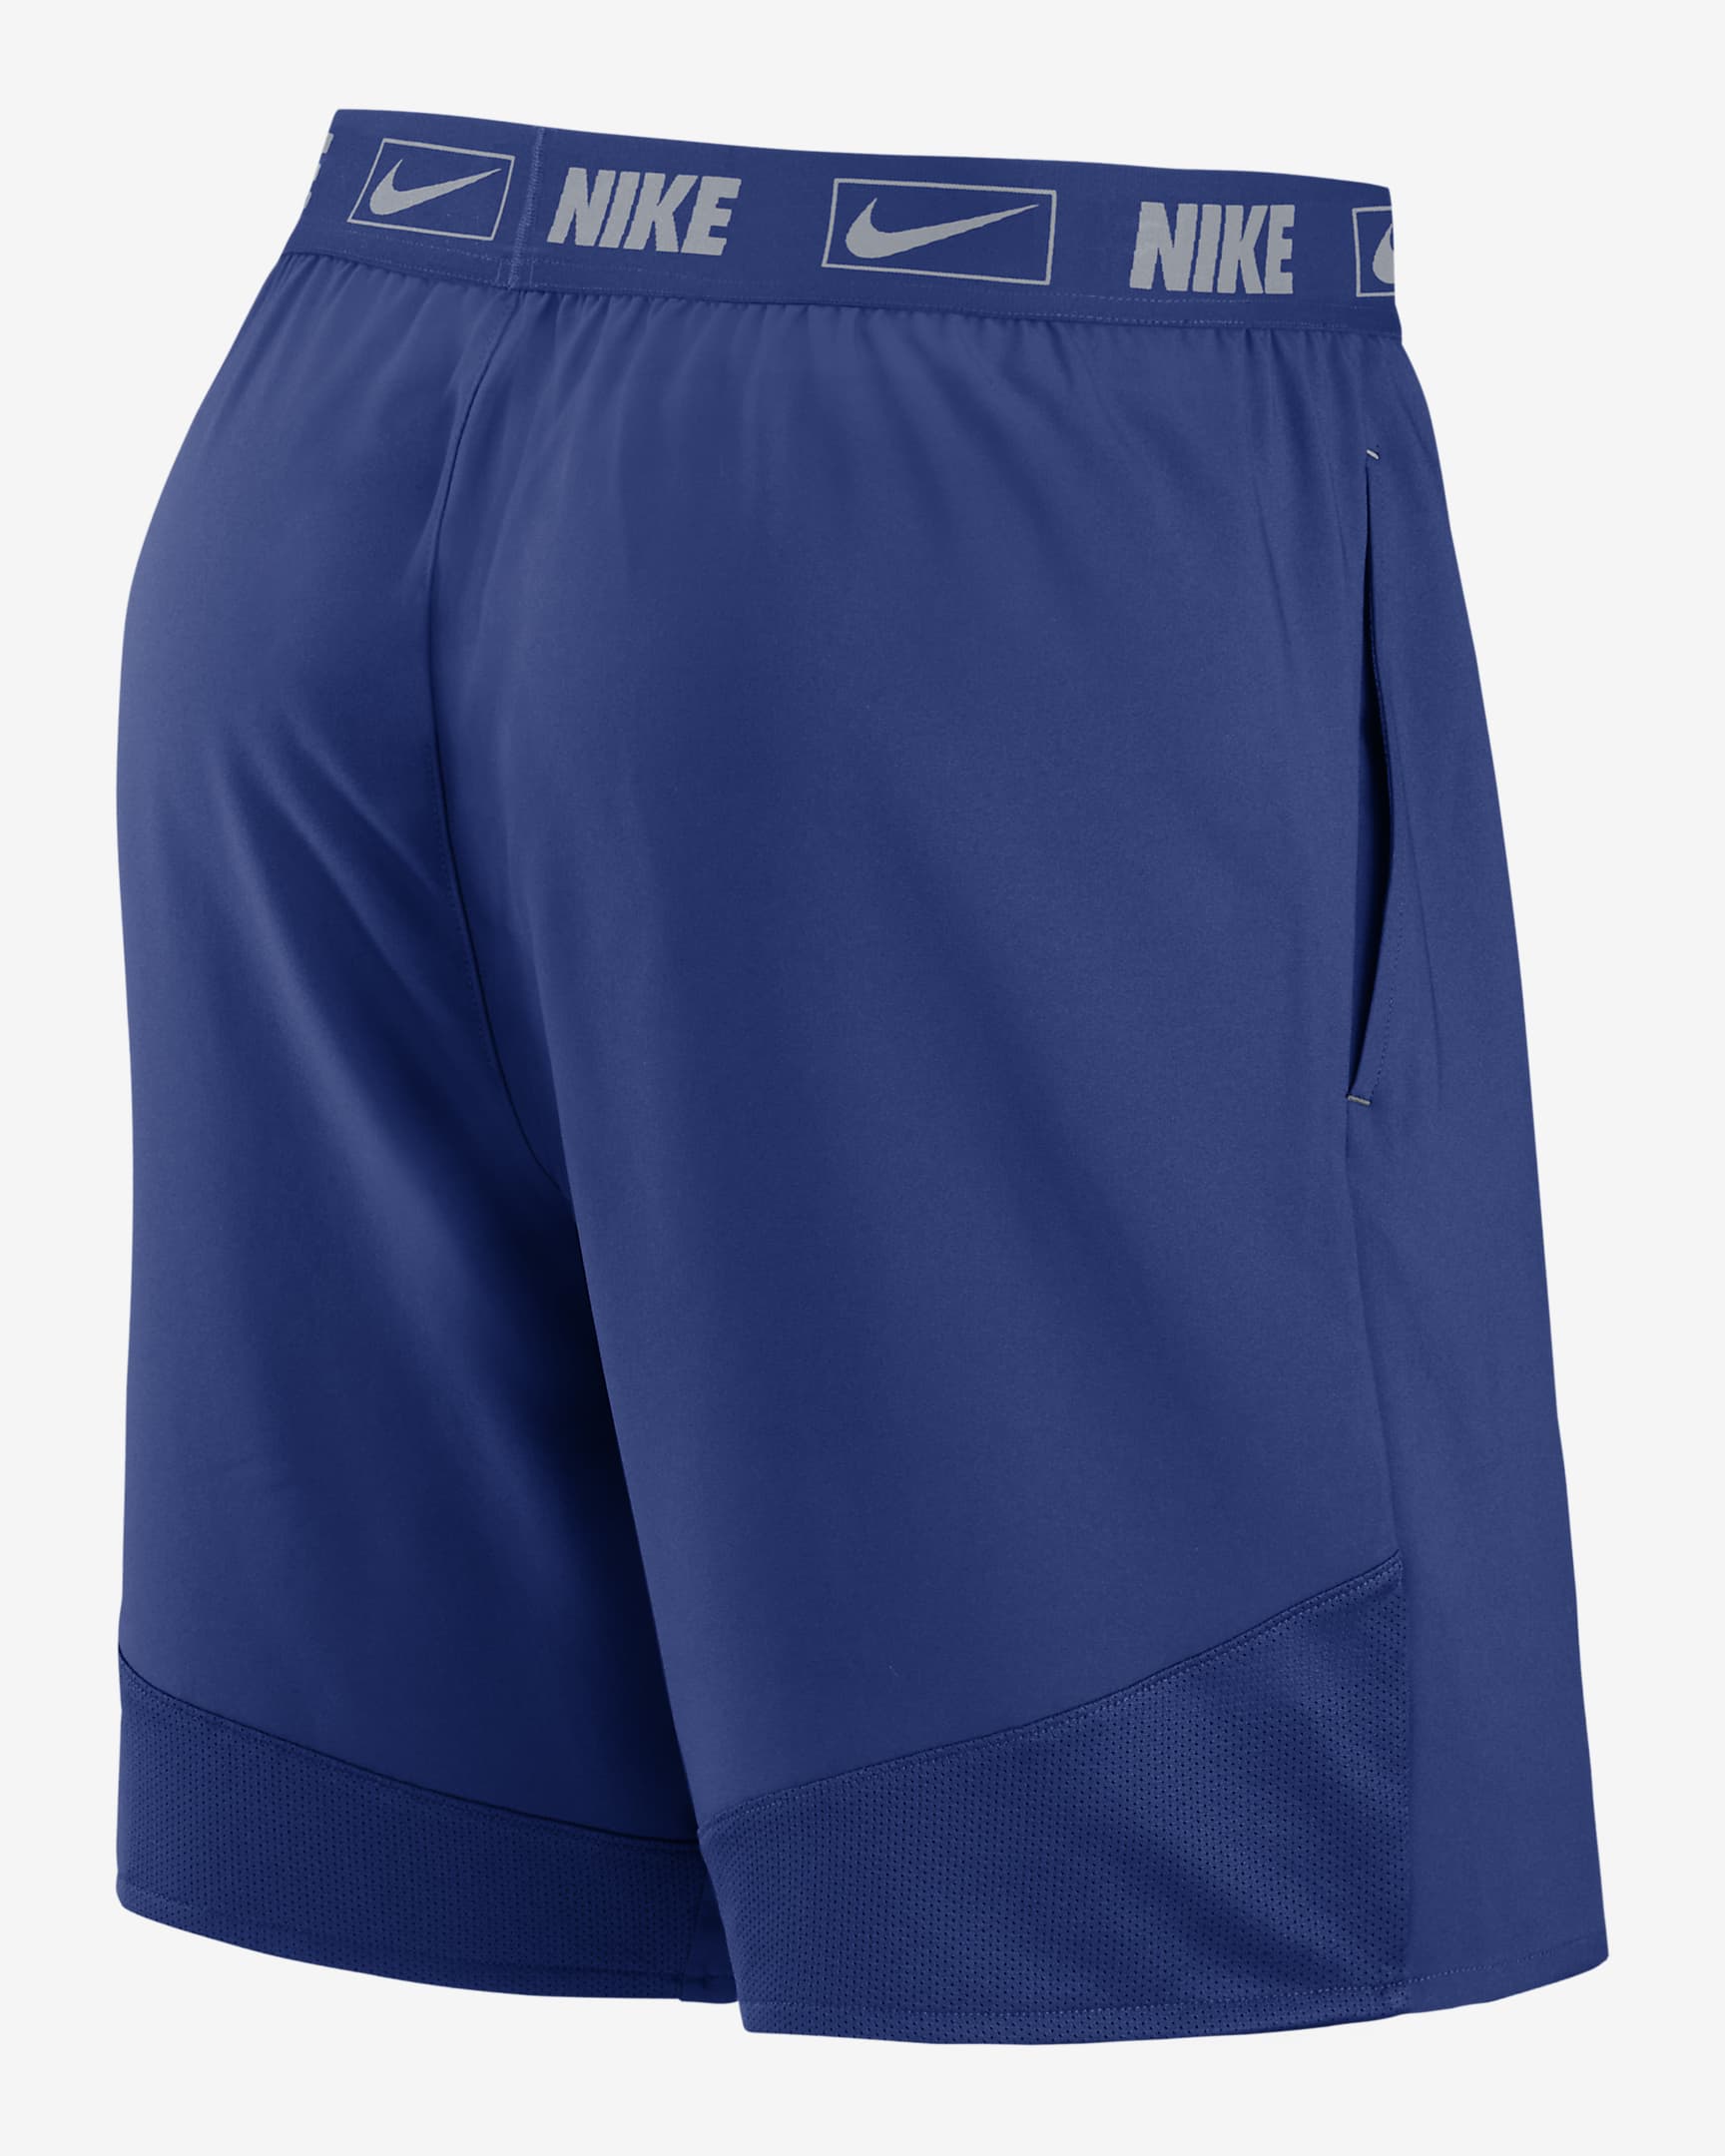 Nike Dri-FIT City Connect (MLB Atlanta Braves) Men's Shorts. Nike.com